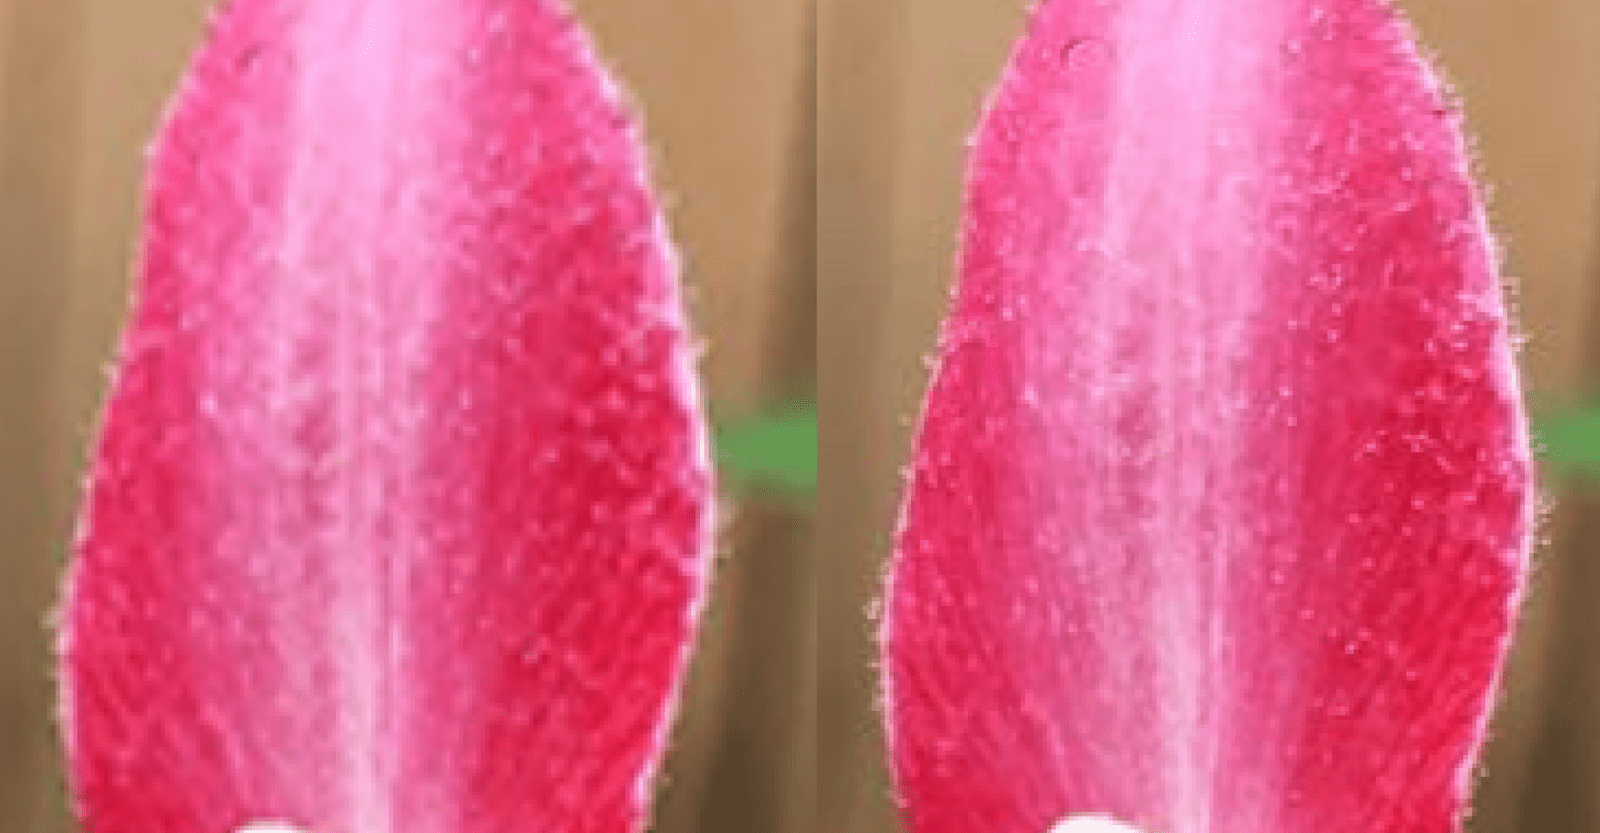 Tampilan close-up kelopak bunga yang menunjukkan perbedaan kepadatan.